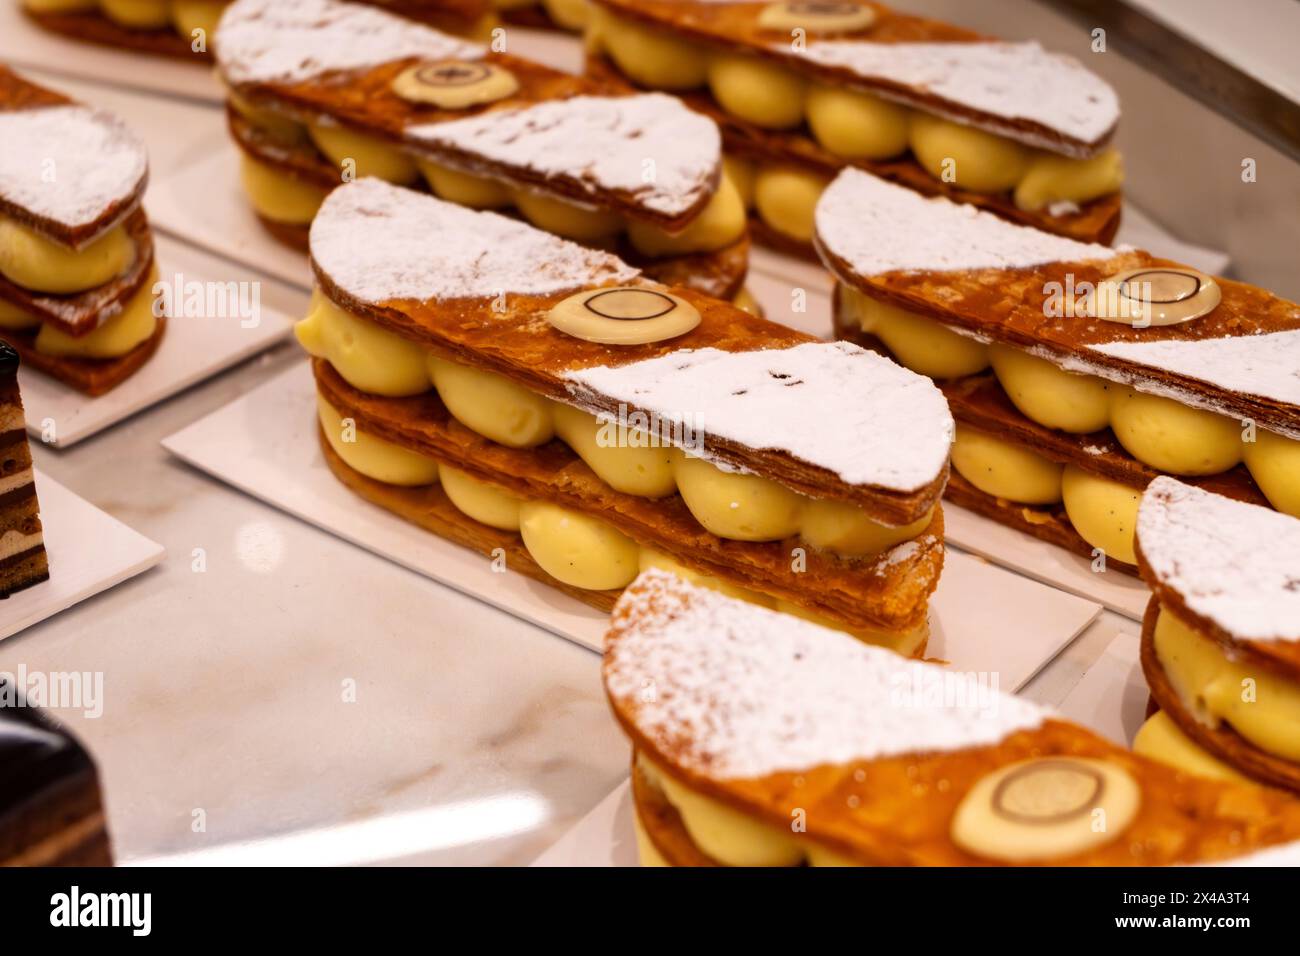 Portion de gâteau mille-feuilles français, tranche de vanille ou de crème anglaise, pâte feuilletée Napoléon superposée à la crème pâtissière en boulangerie Banque D'Images